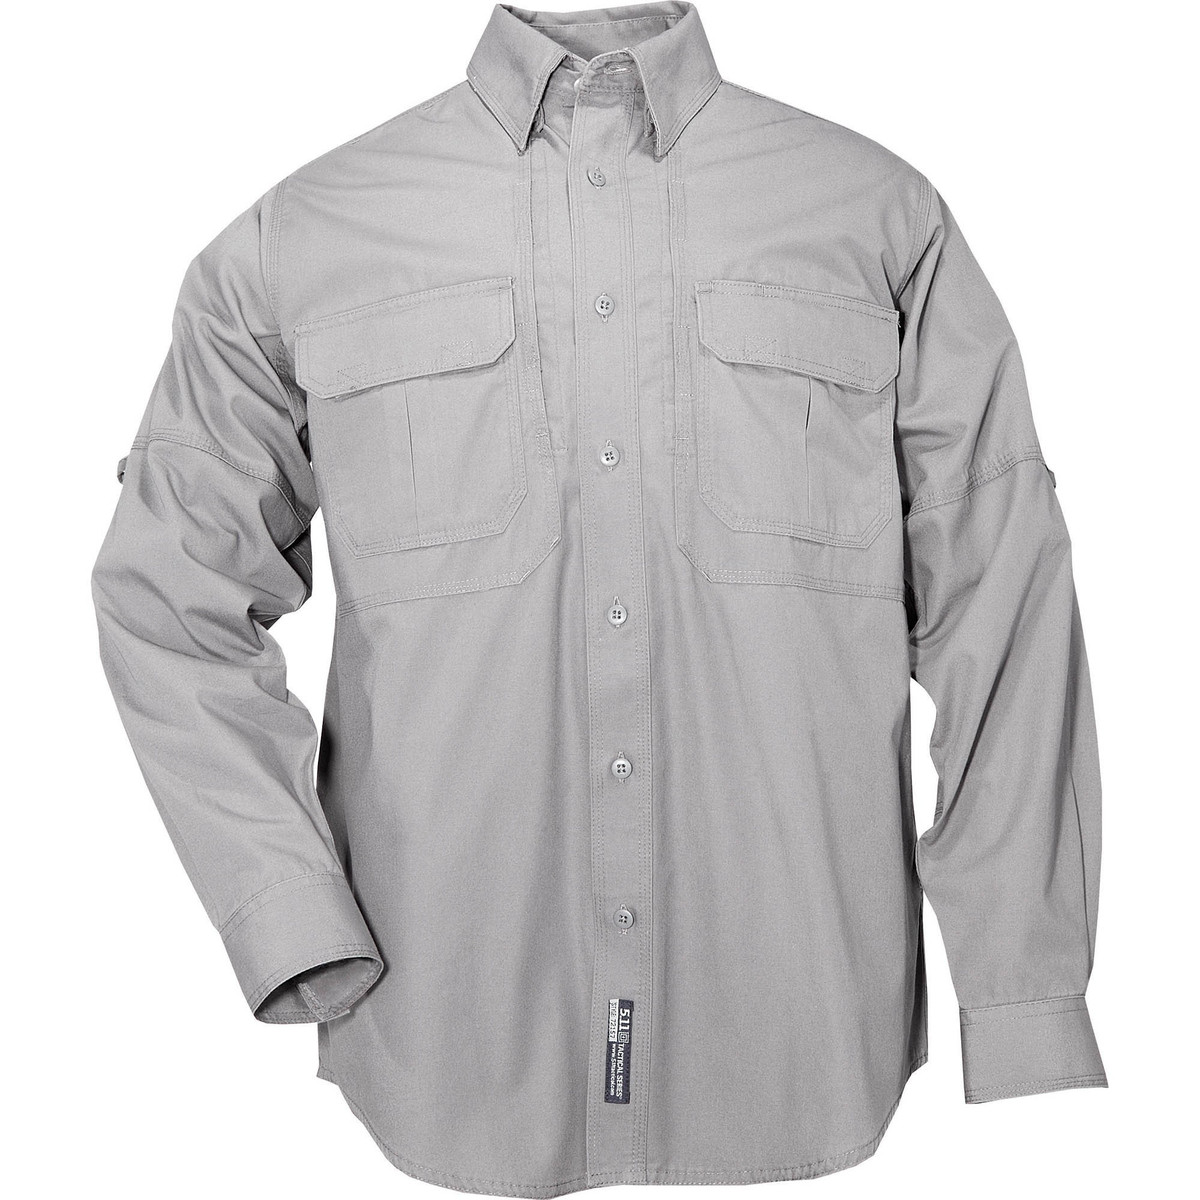 Outdoor Tactical | 5.11 Tactical Long Sleeve Shirt